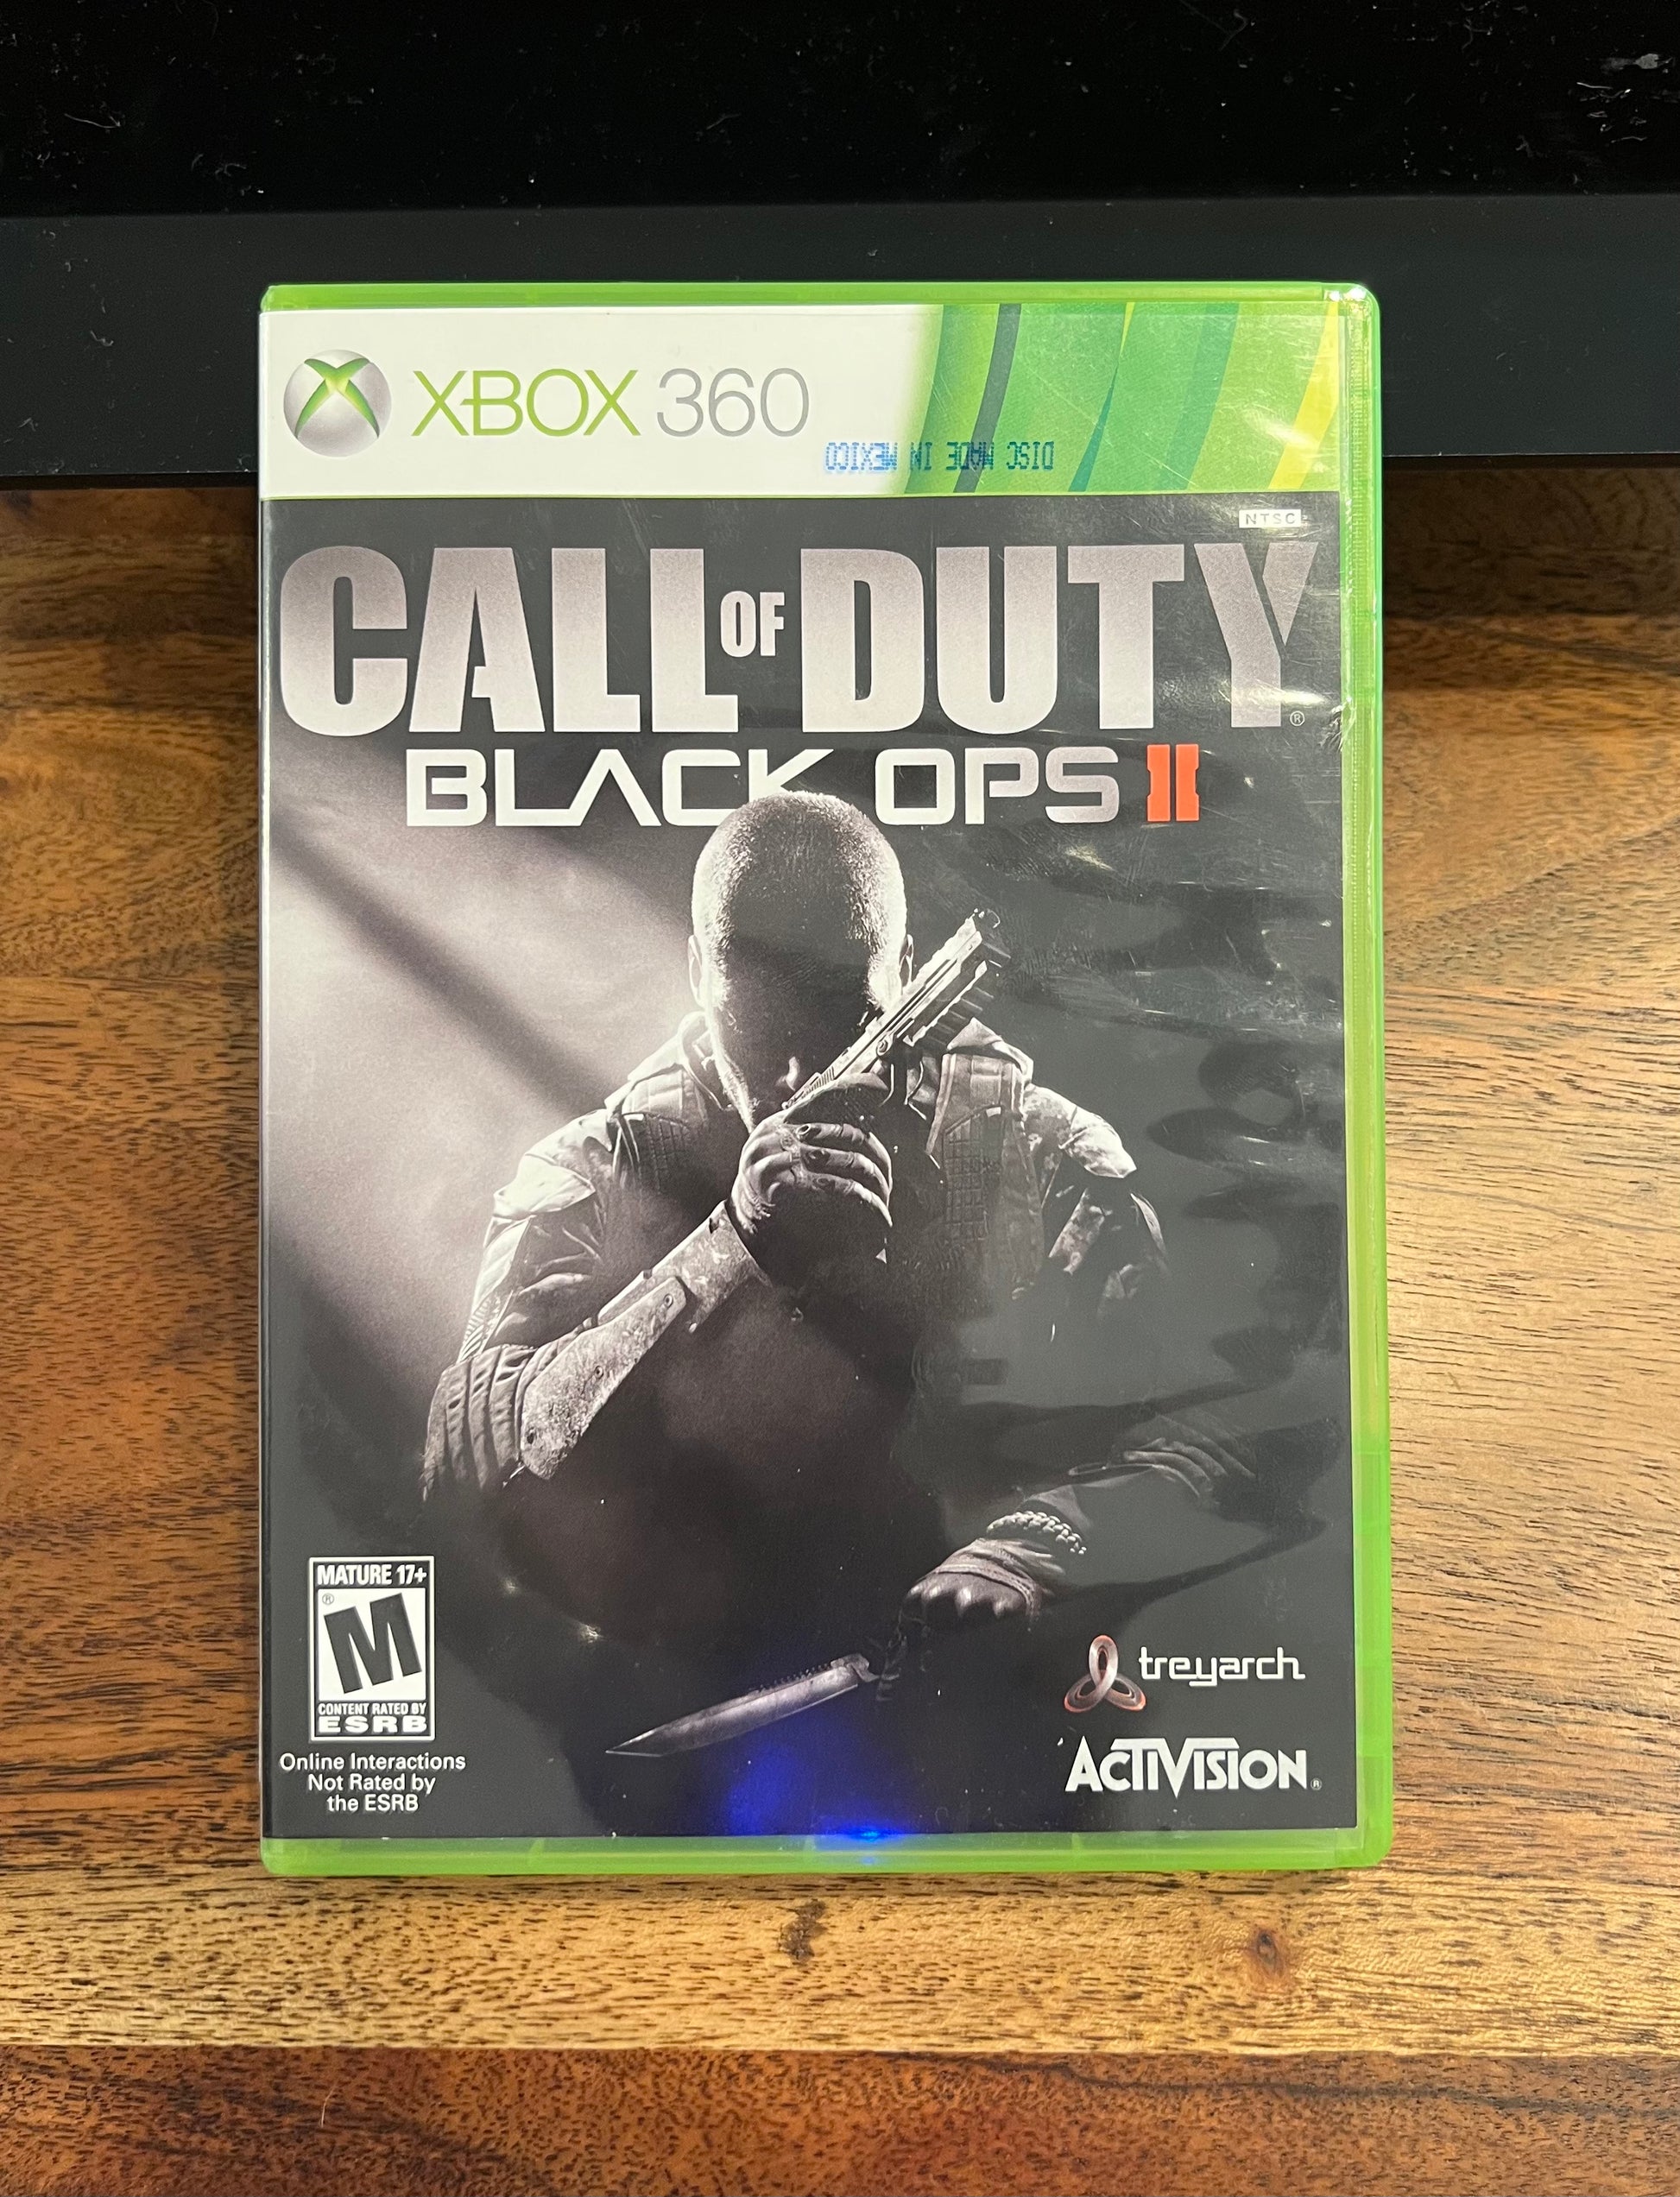 Call of Duty Black Ops II - Xbox 360 Game